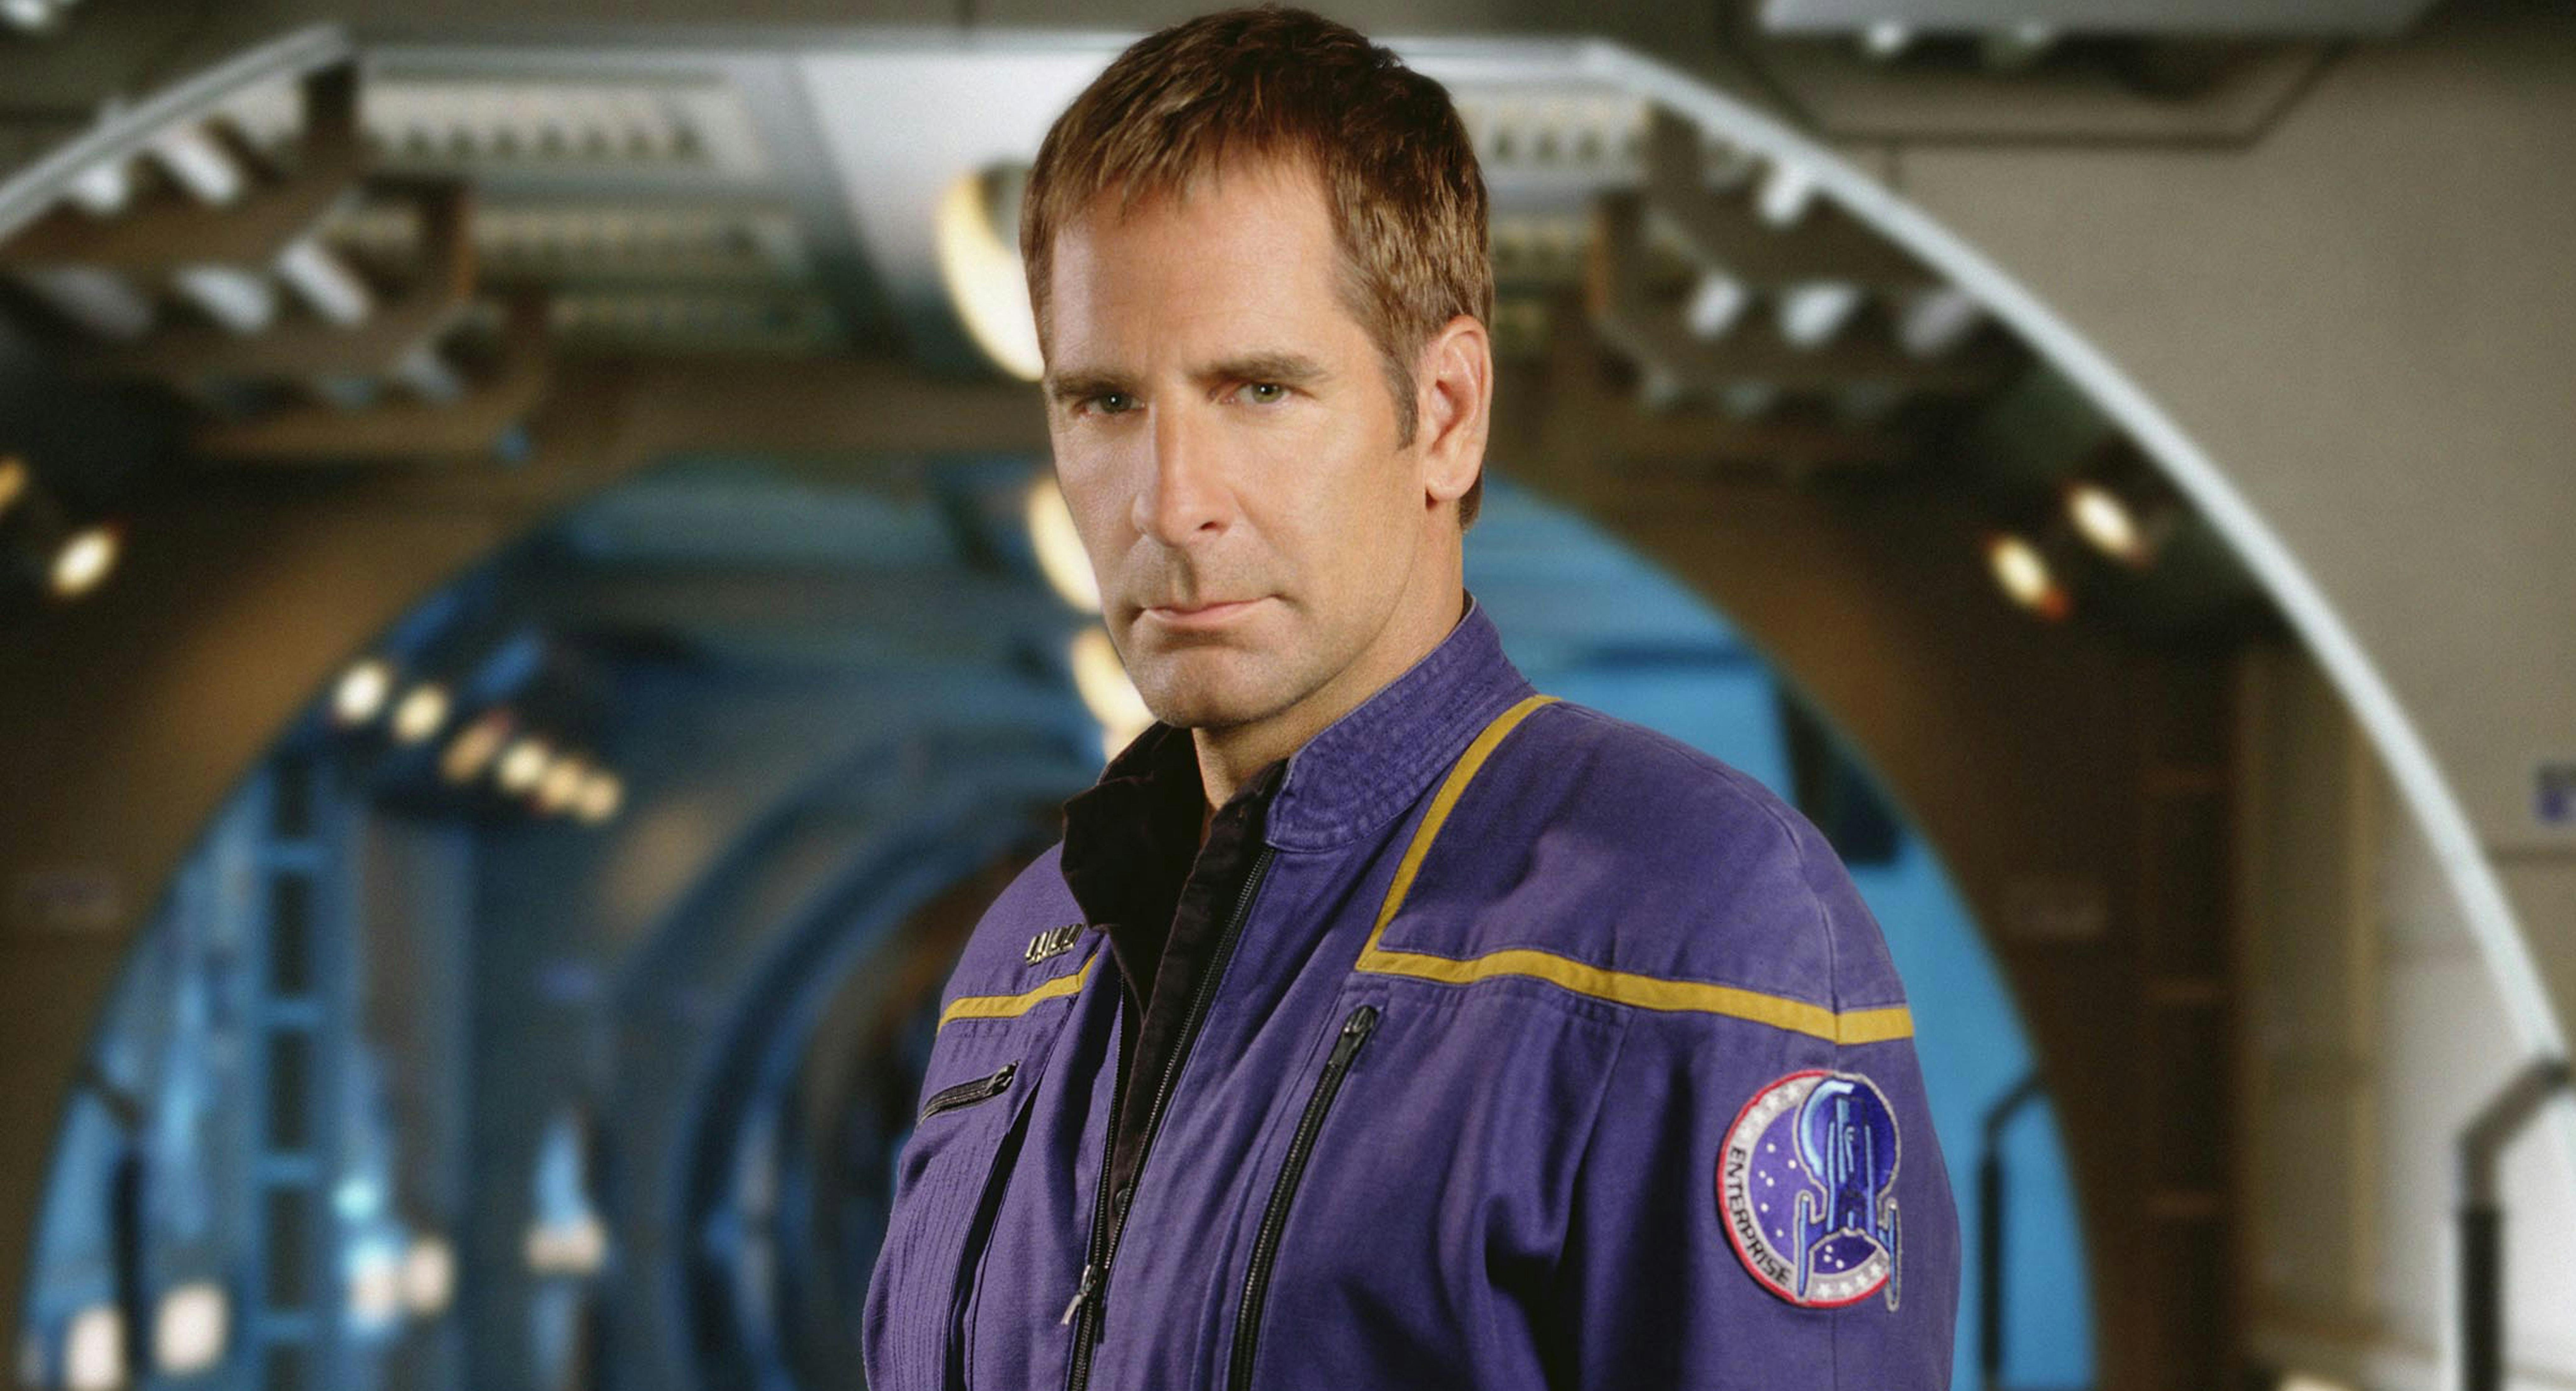 Scott Bakula as Captain Jonathan Archer of Star Trek: Enterprise